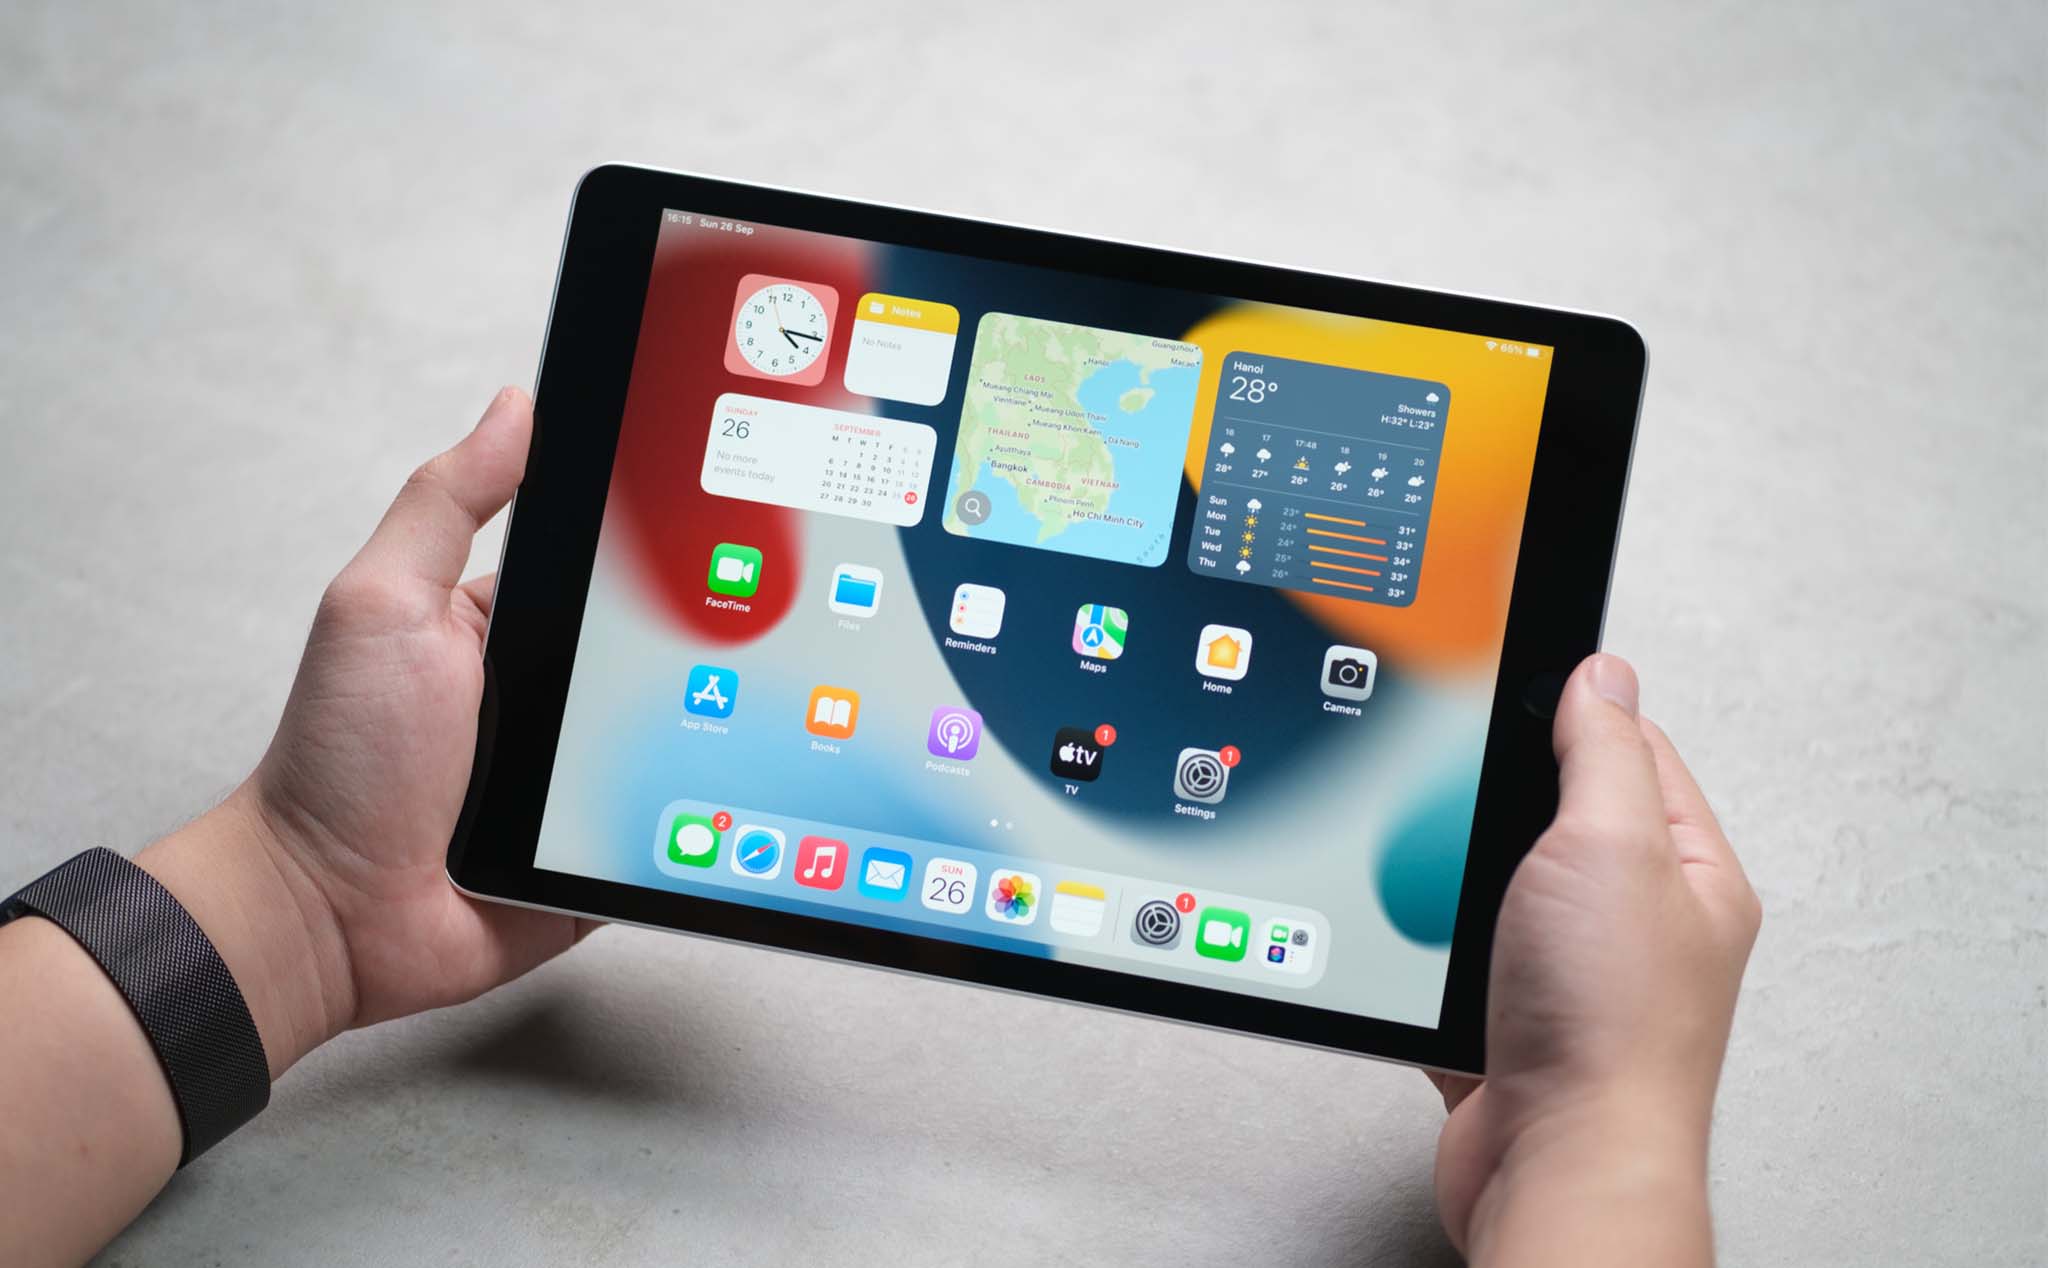 Nếu bạn đang muốn mua một chiếc iPad để vẽ và take notes, hãy tìm hiểu thông tin về sản phẩm trước khi quyết định mua. Với sự phong phú của thị trường, đôi khi không biết chọn loại nào là tốt nhất. Thông qua ảnh liên quan, bạn sẽ có thêm thông tin hữu ích để lựa chọn chiếc iPad phù hợp.